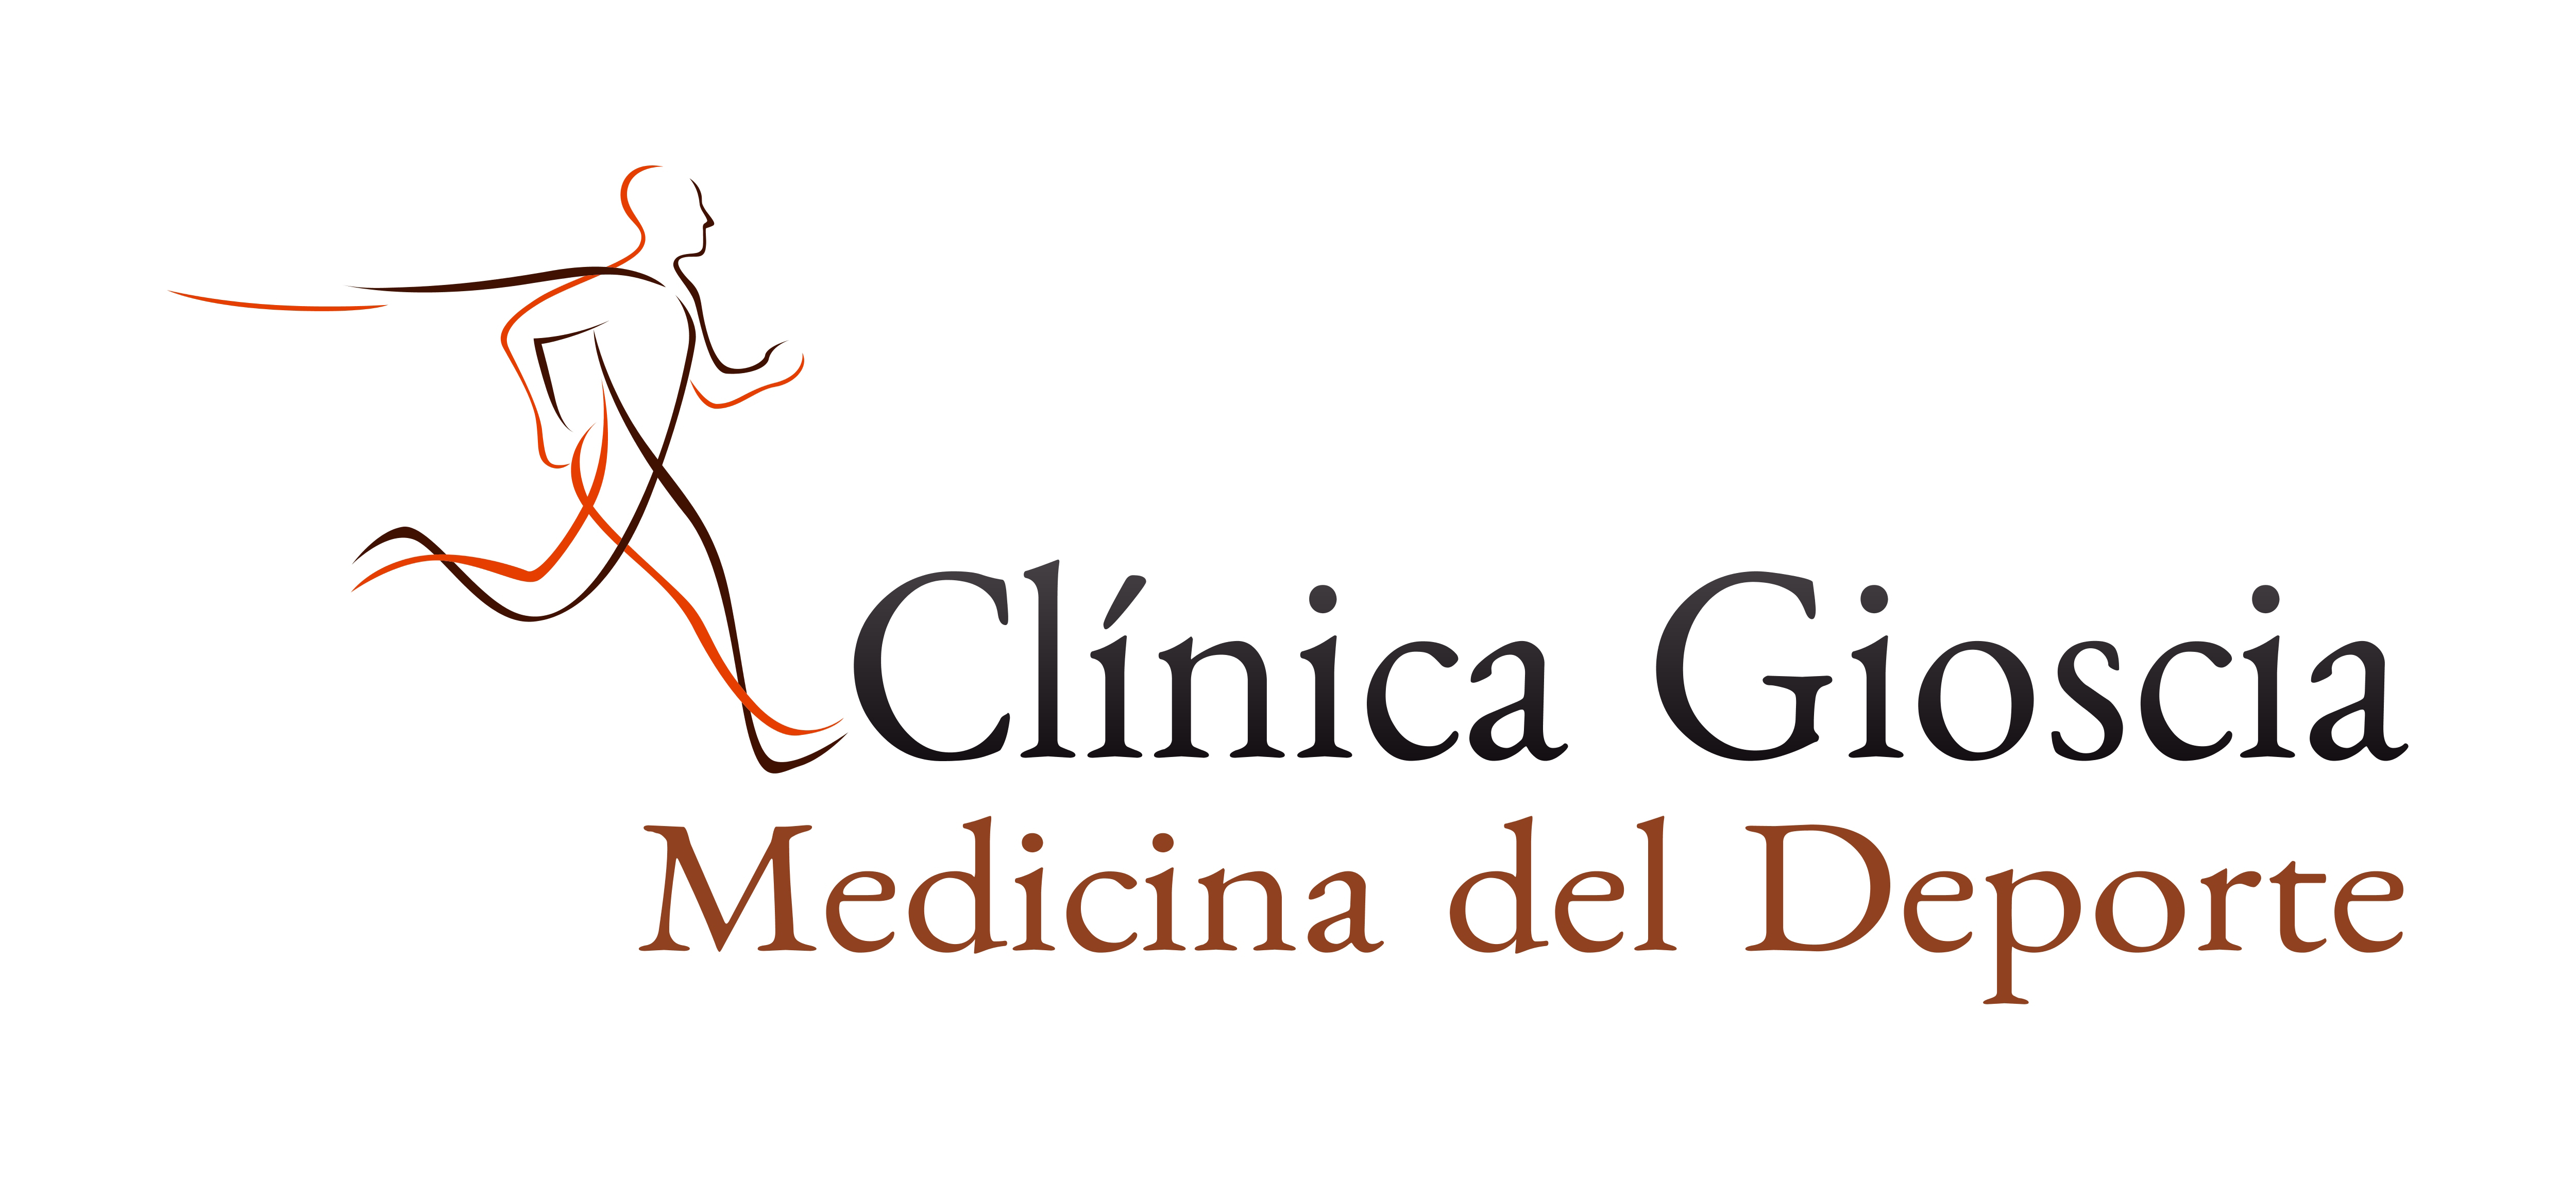 Experto internacional en nutrición y deporte brindará conferencia en Clínica Gioscia